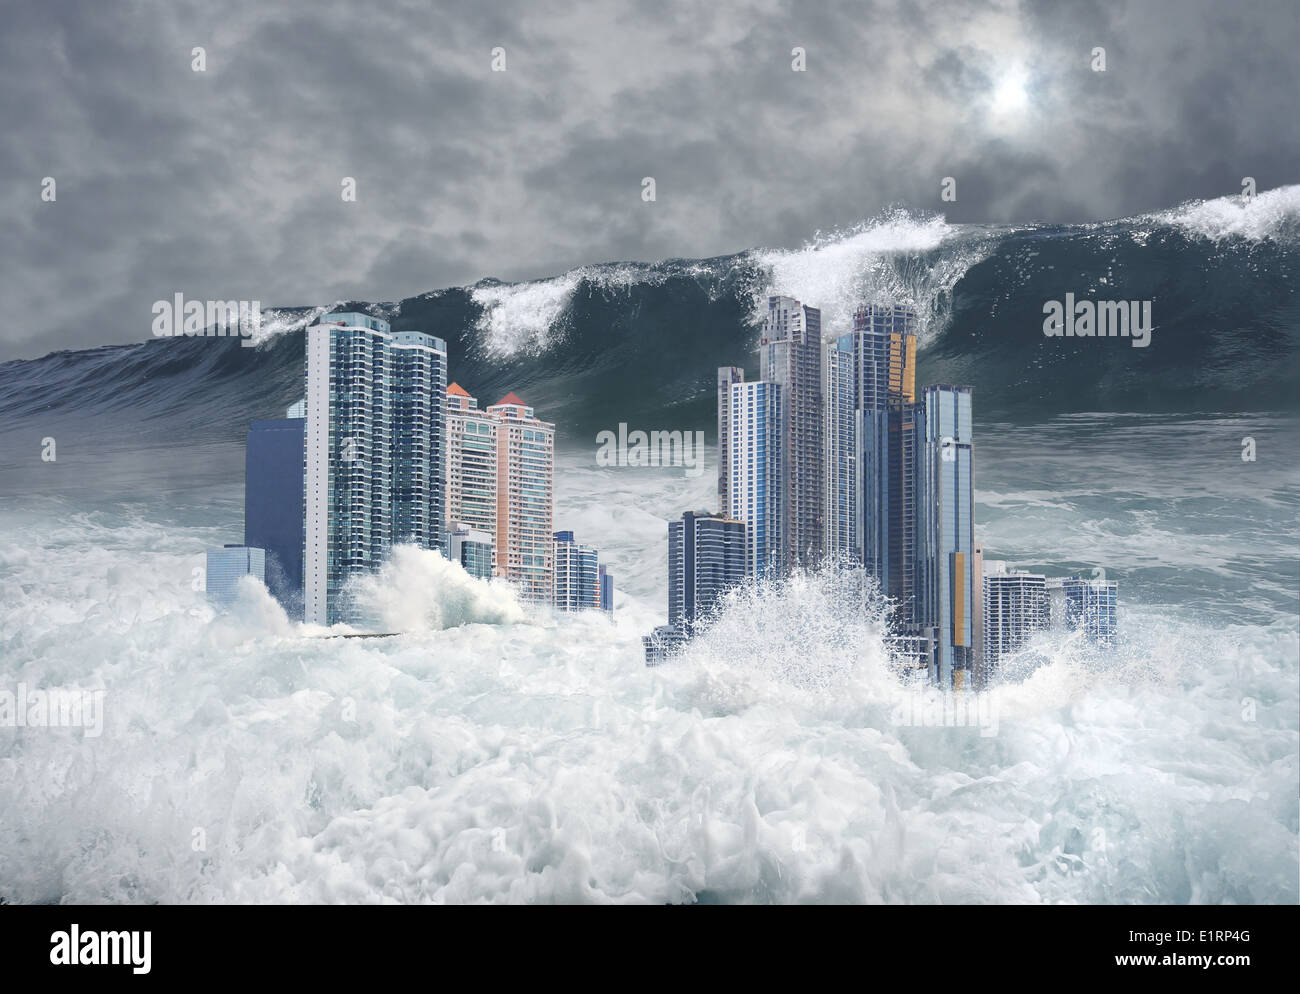 Scena apocalittica di moderni grattacieli della città sommersa dal tsunami con un gigante di seconda ondata proveniente Foto Stock